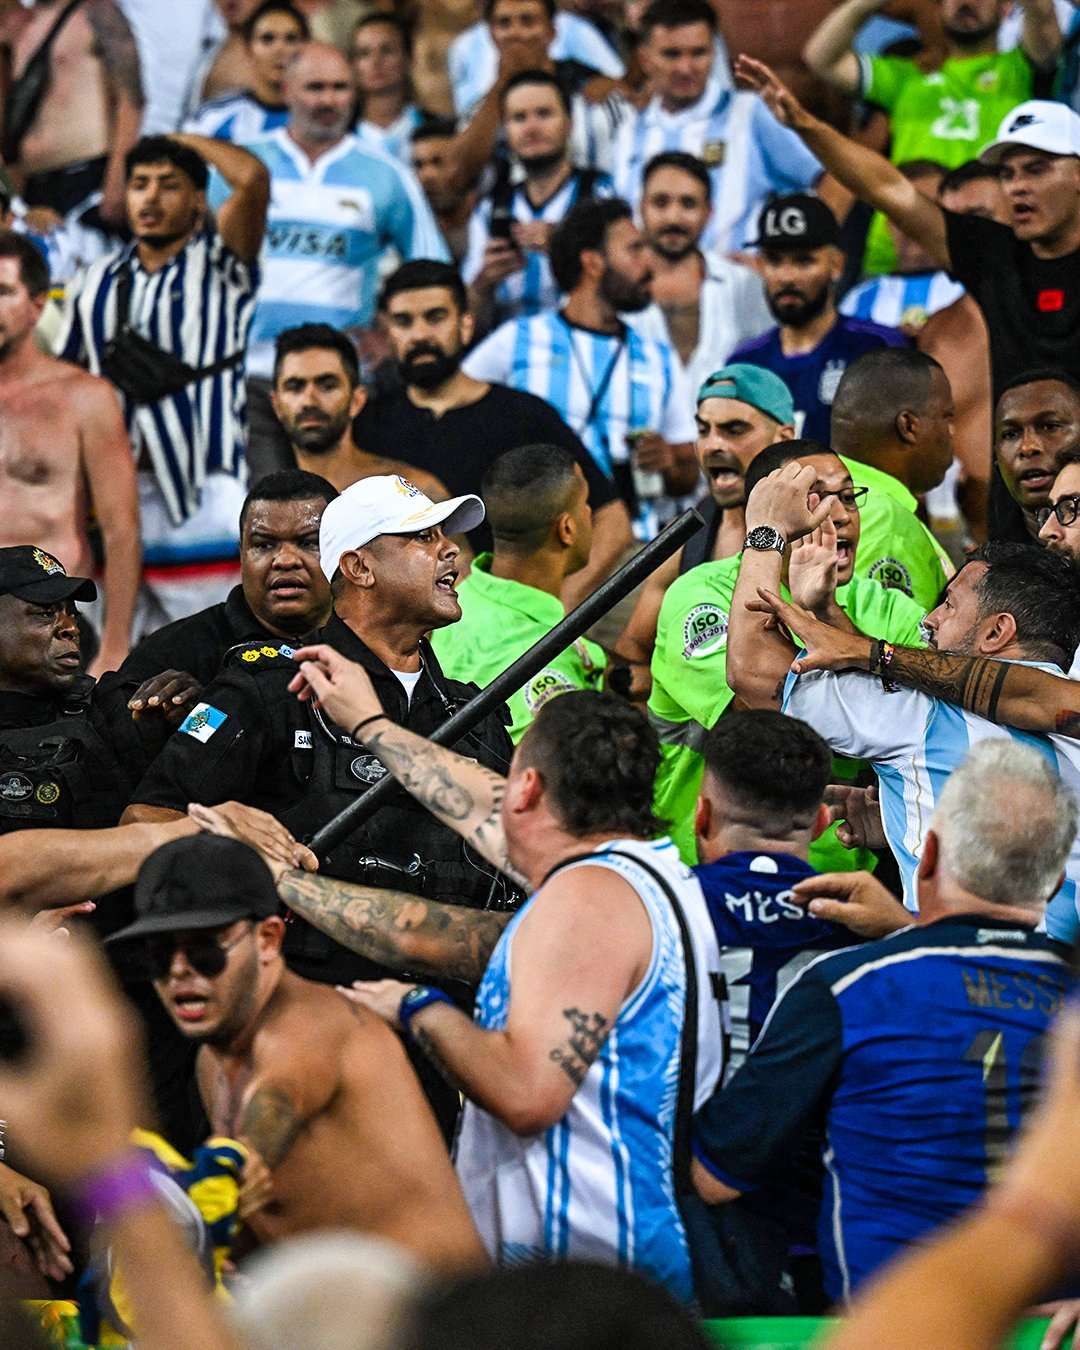 Gravísima y salvaje agresión de la policía brasilera a los hinchas argentinos antes del partido